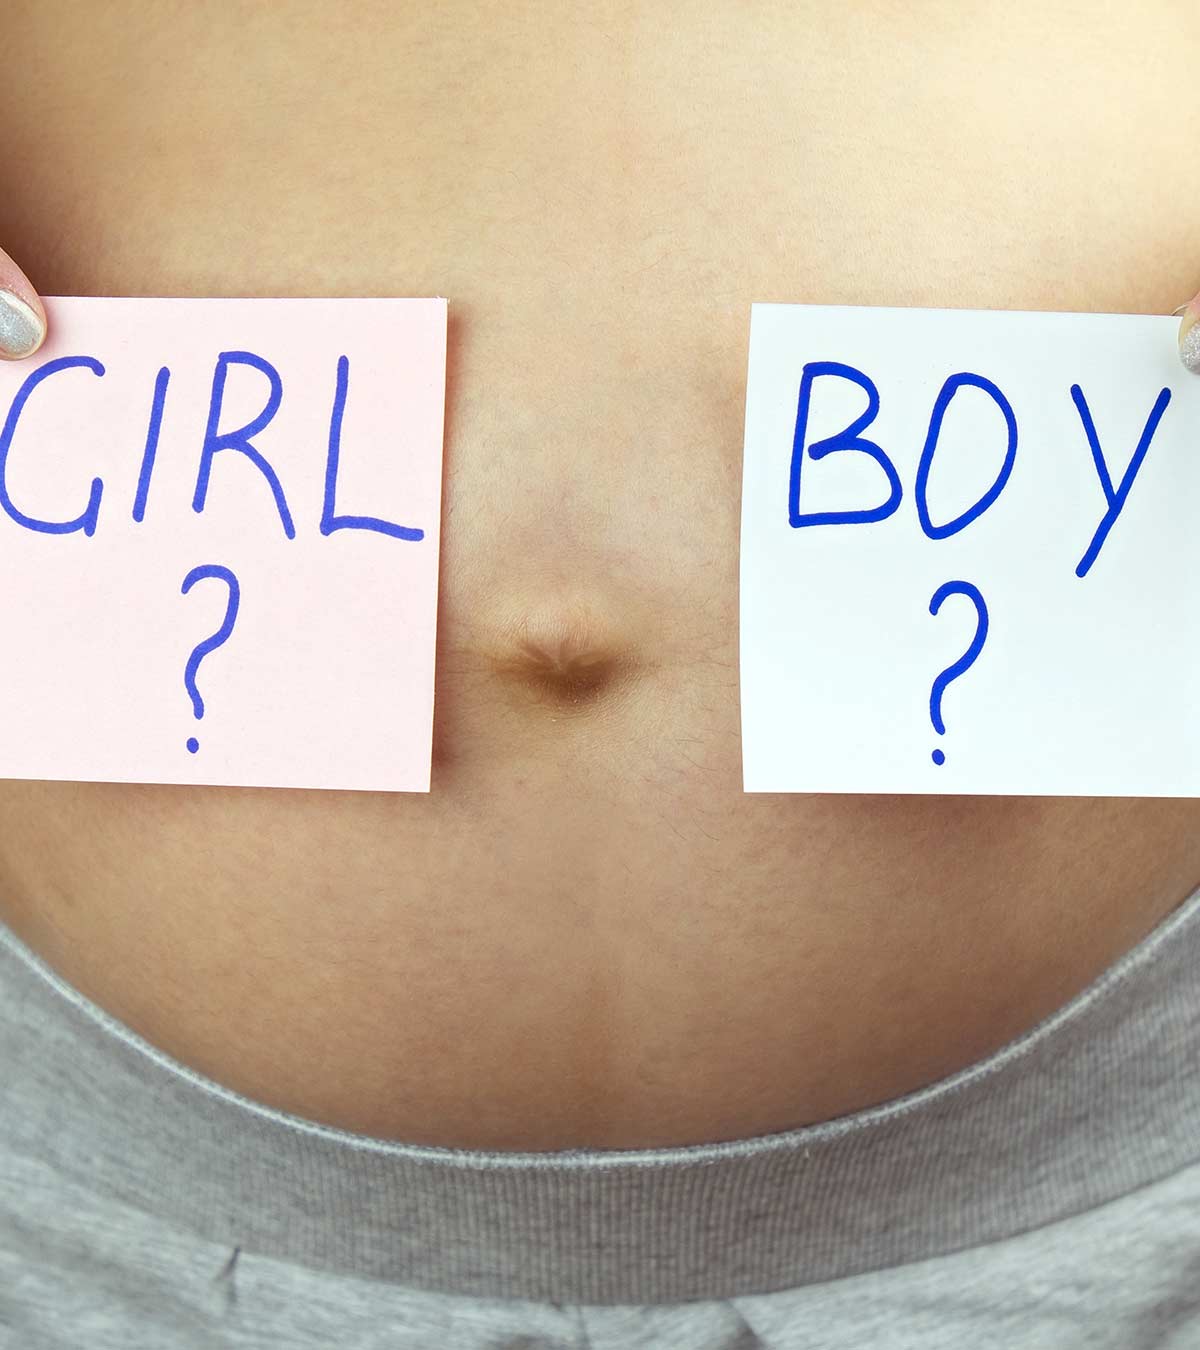 लड़का या लड़की : क्या हार्टबीट से बच्चे के लिंग का पता लगाया जा सकता है? | Baby Gender Prediction By Heartbeat In Hindi